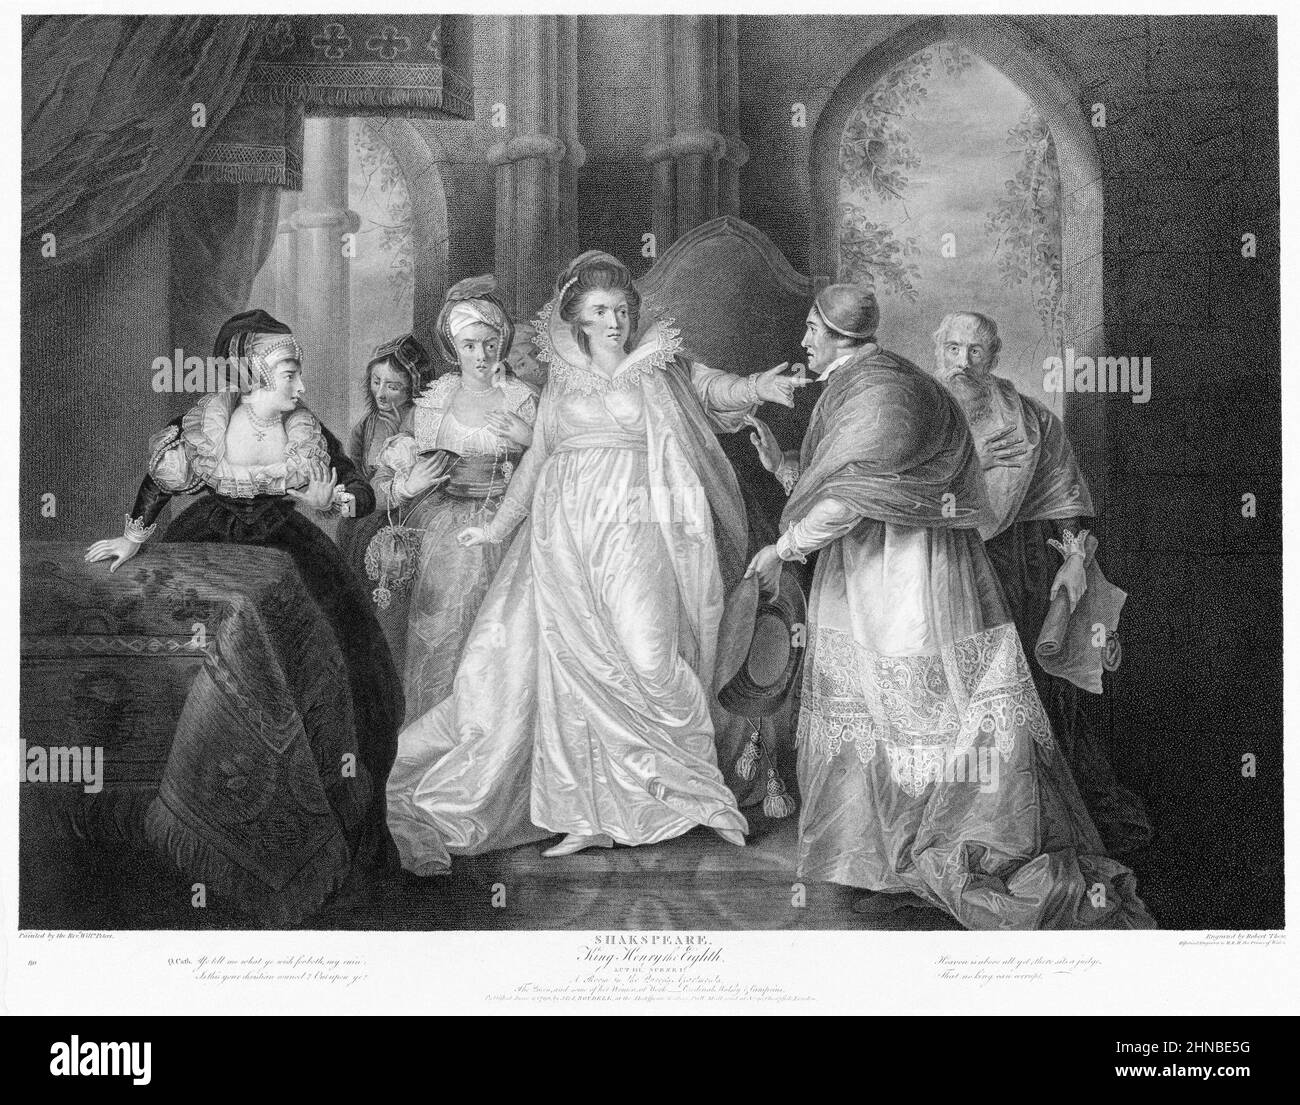 La reine Catherine, le cardinal Wolsey et le cardinal Campeius du roi Henri VIII de Shakespeare, Acte 3, scène 1 Banque D'Images